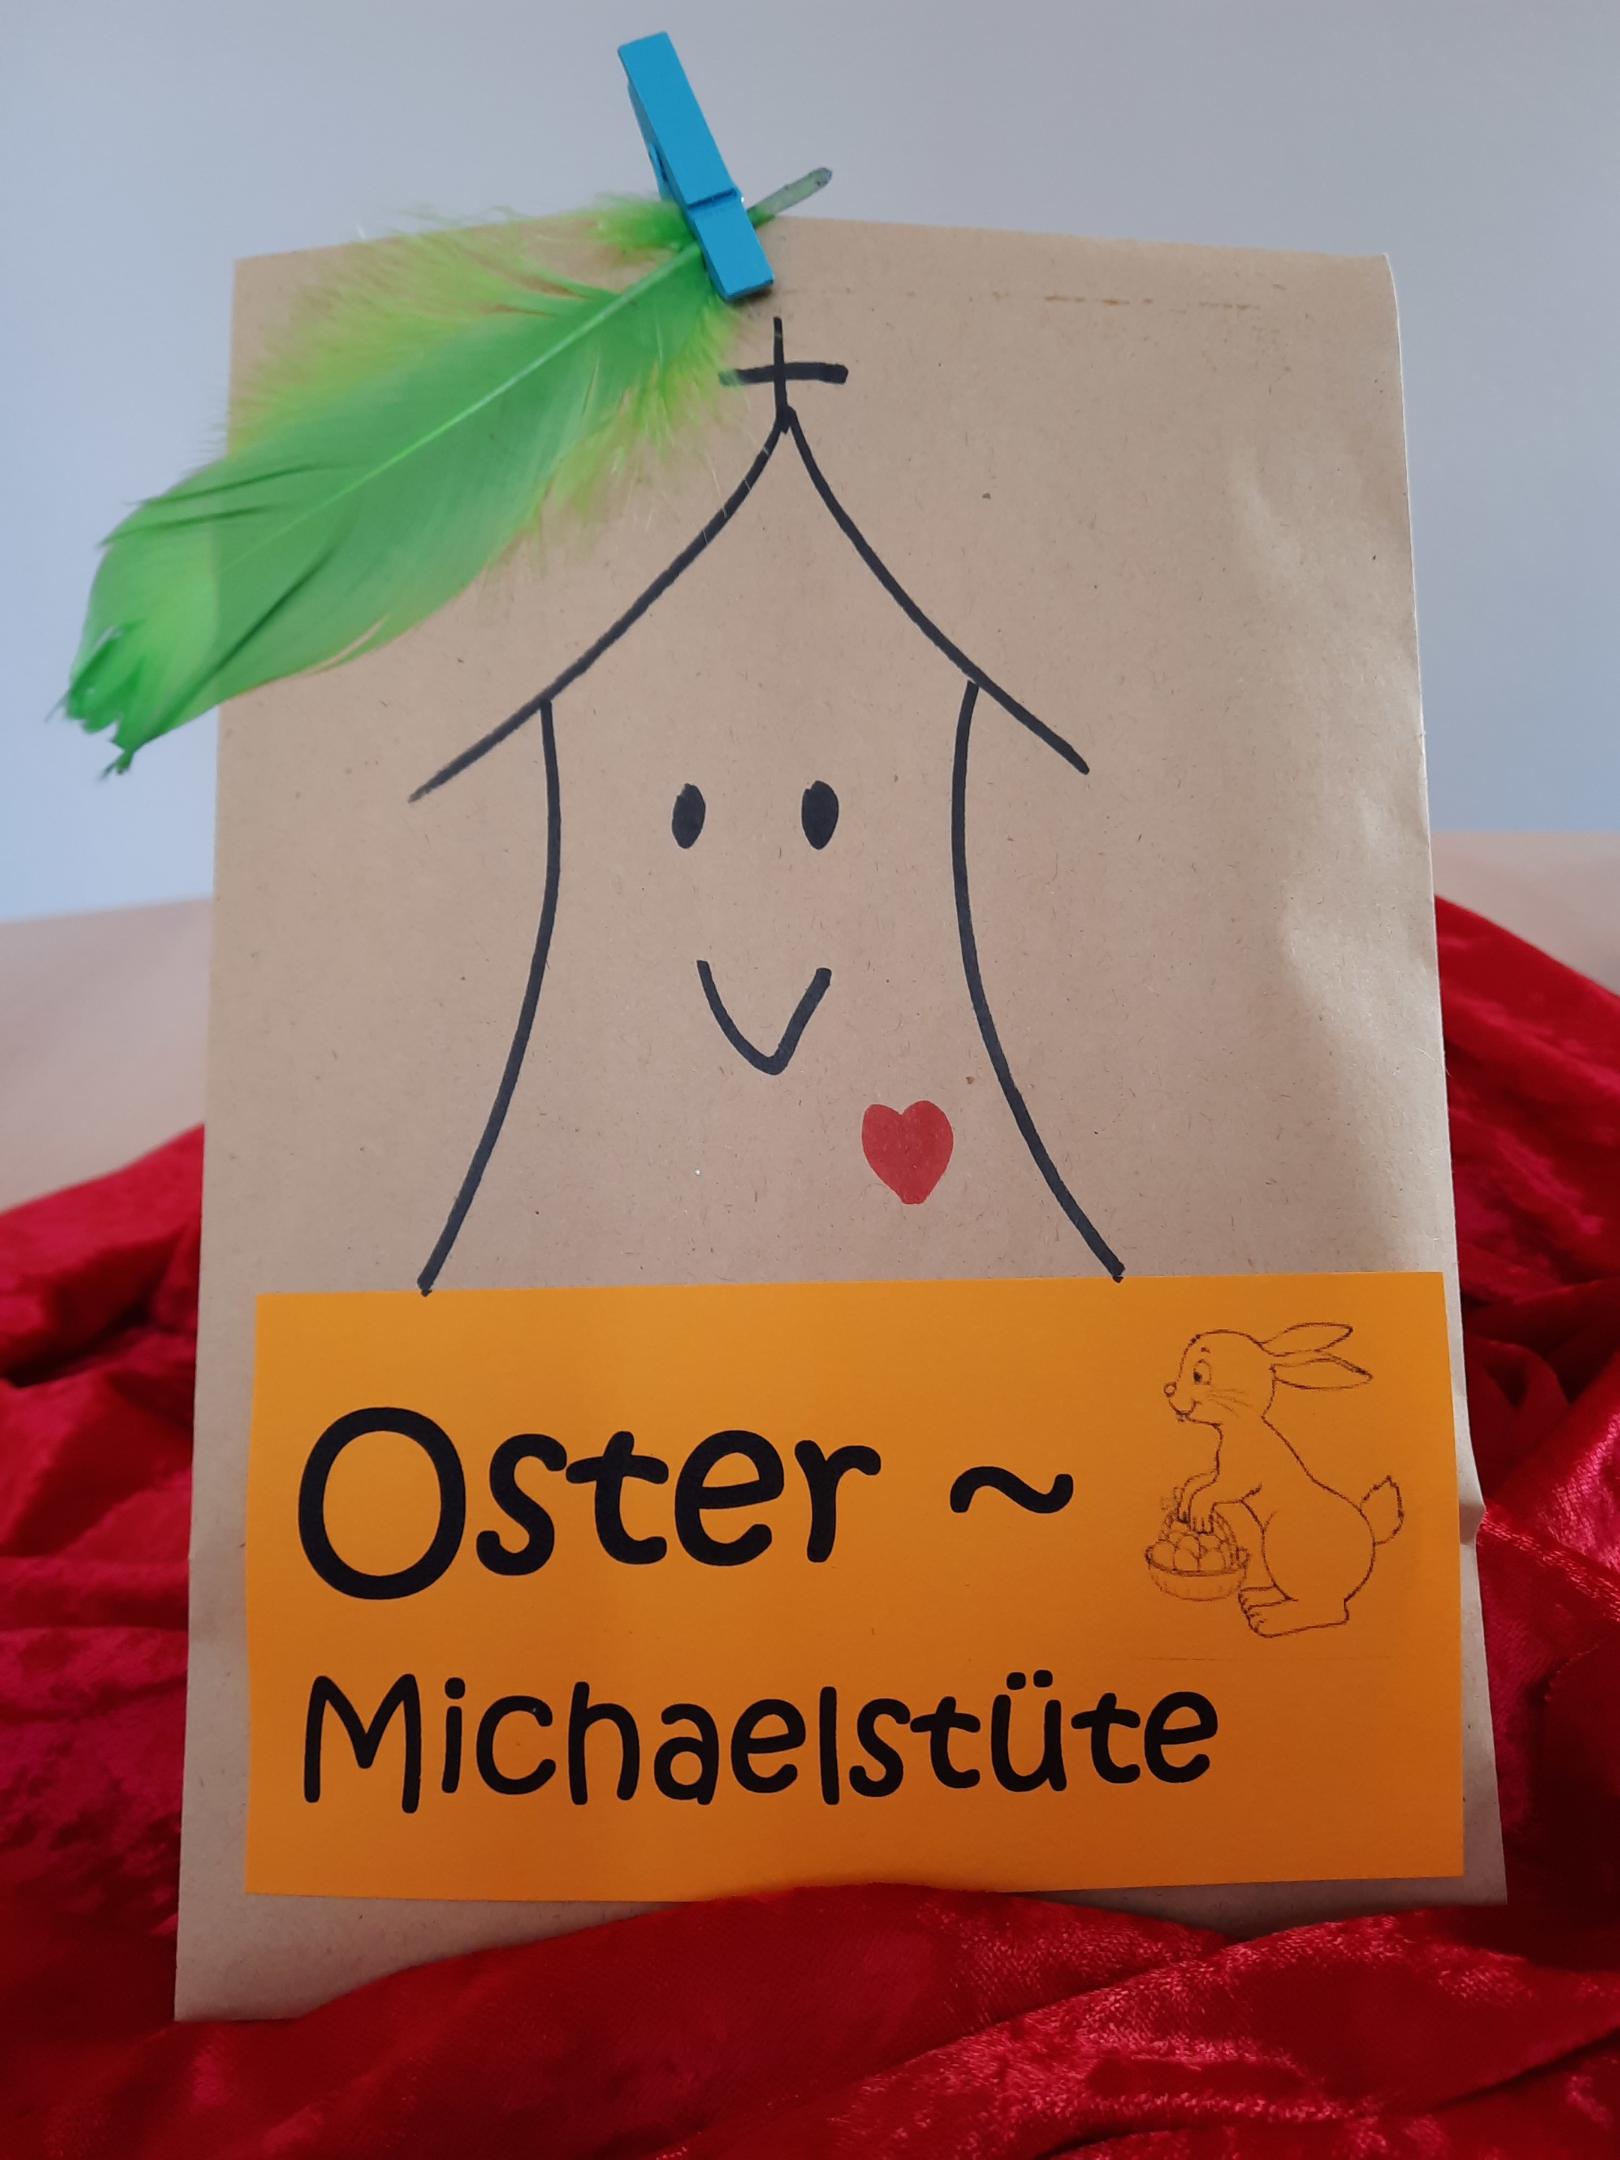 OsterTüte (c) Schindler-Christe